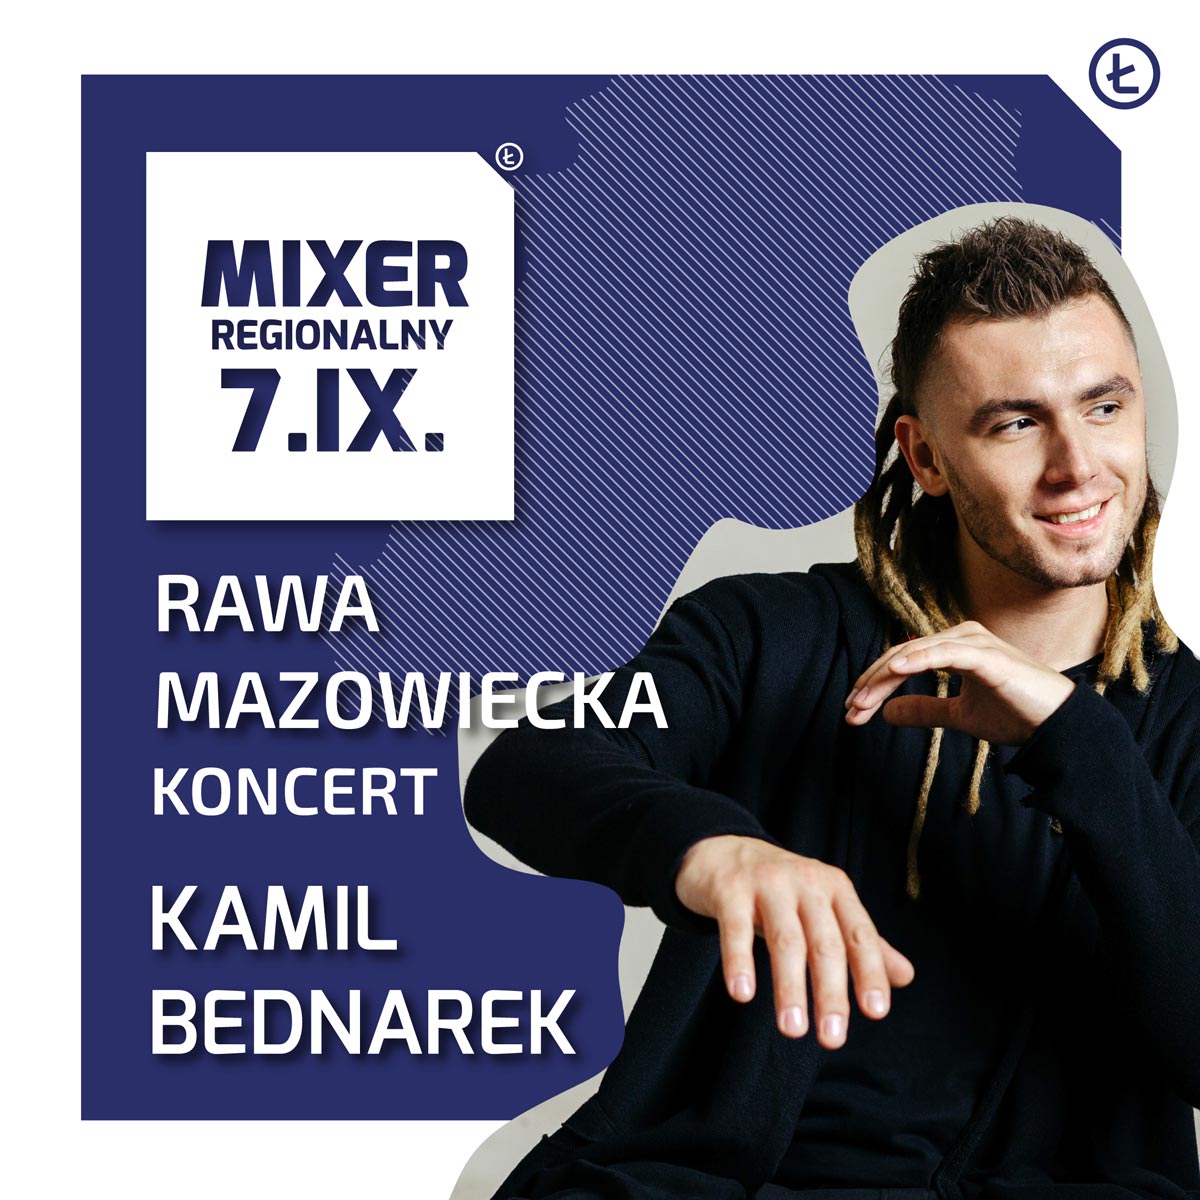 mixer regionalny 2019 rawa mazowiecka